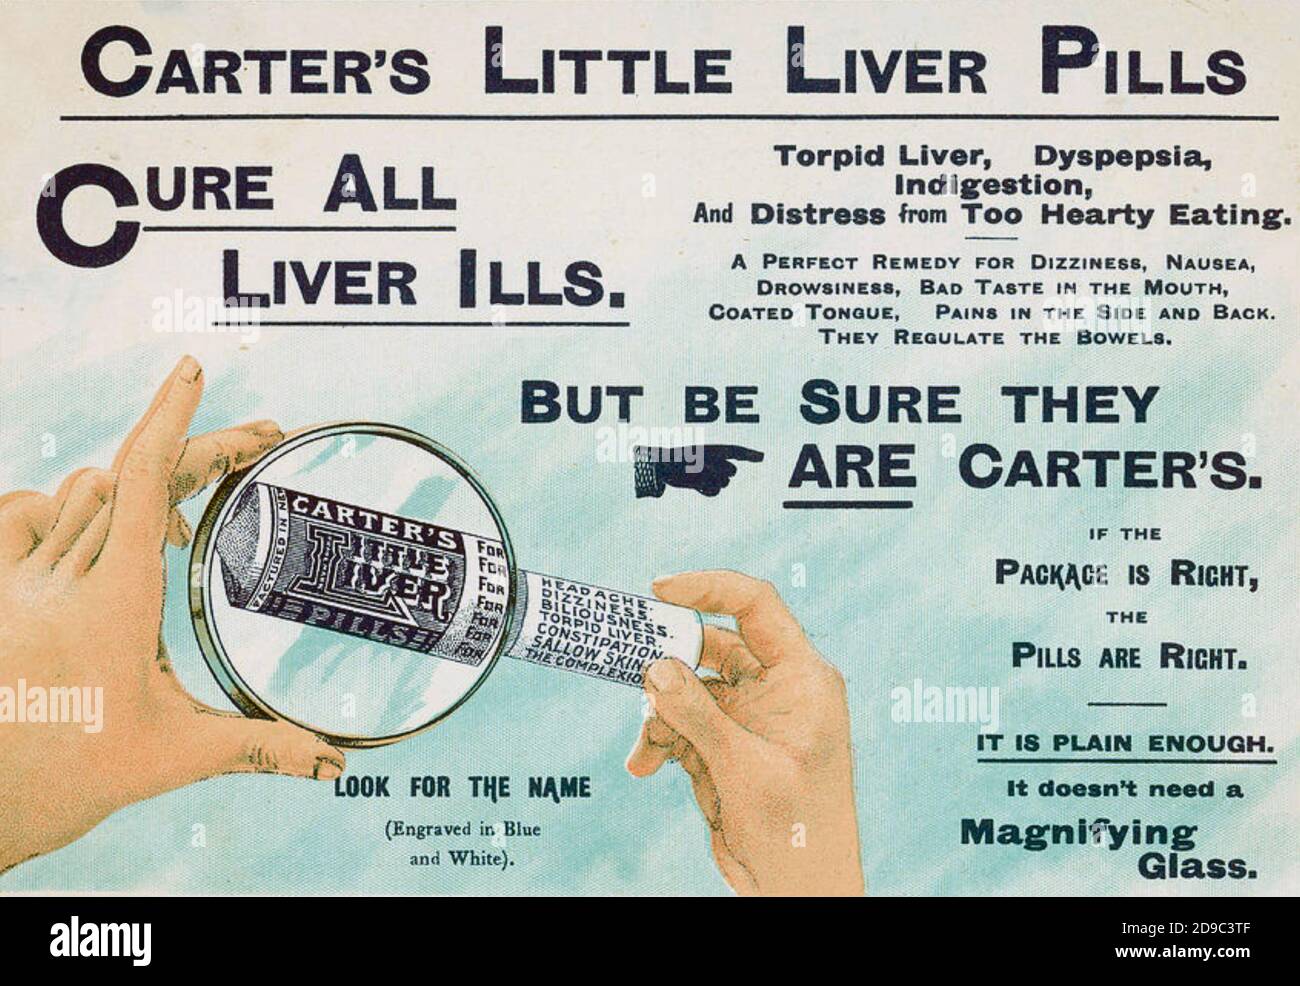 PETITE publicité DE CARTER SUR les PILULES DE FOIE à propos de 1905. Publicité britannique pour la médecine américaine des brevets formulée par Samuel carter, de Erie, Pennsylvanie, en 1868 Banque D'Images